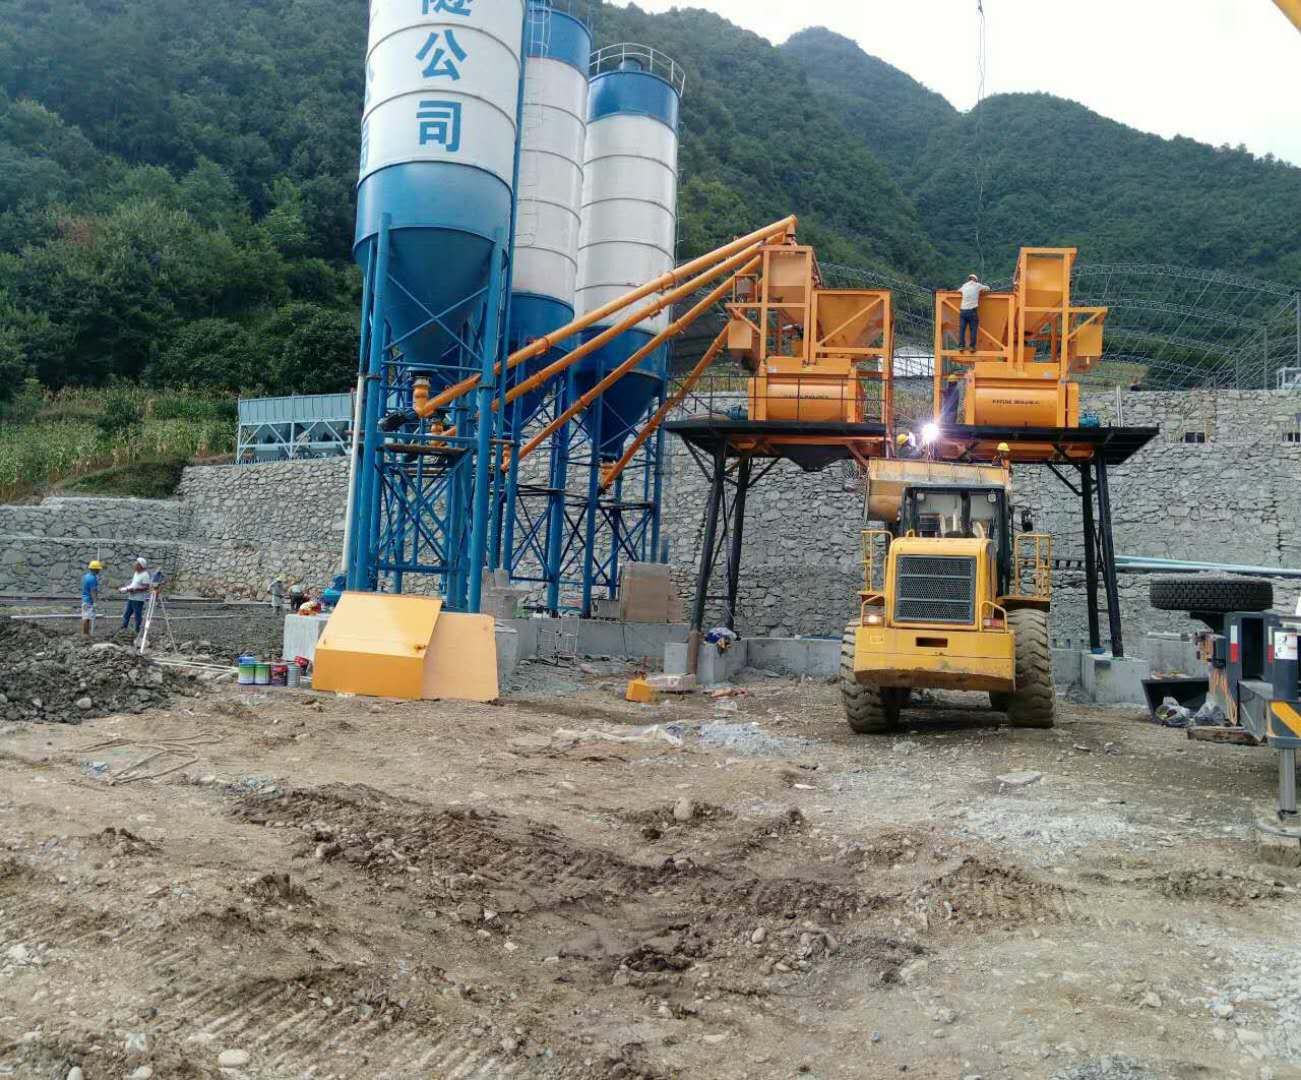 新峰雙HS60混凝土攪拌站交付云南交投公司施工現場